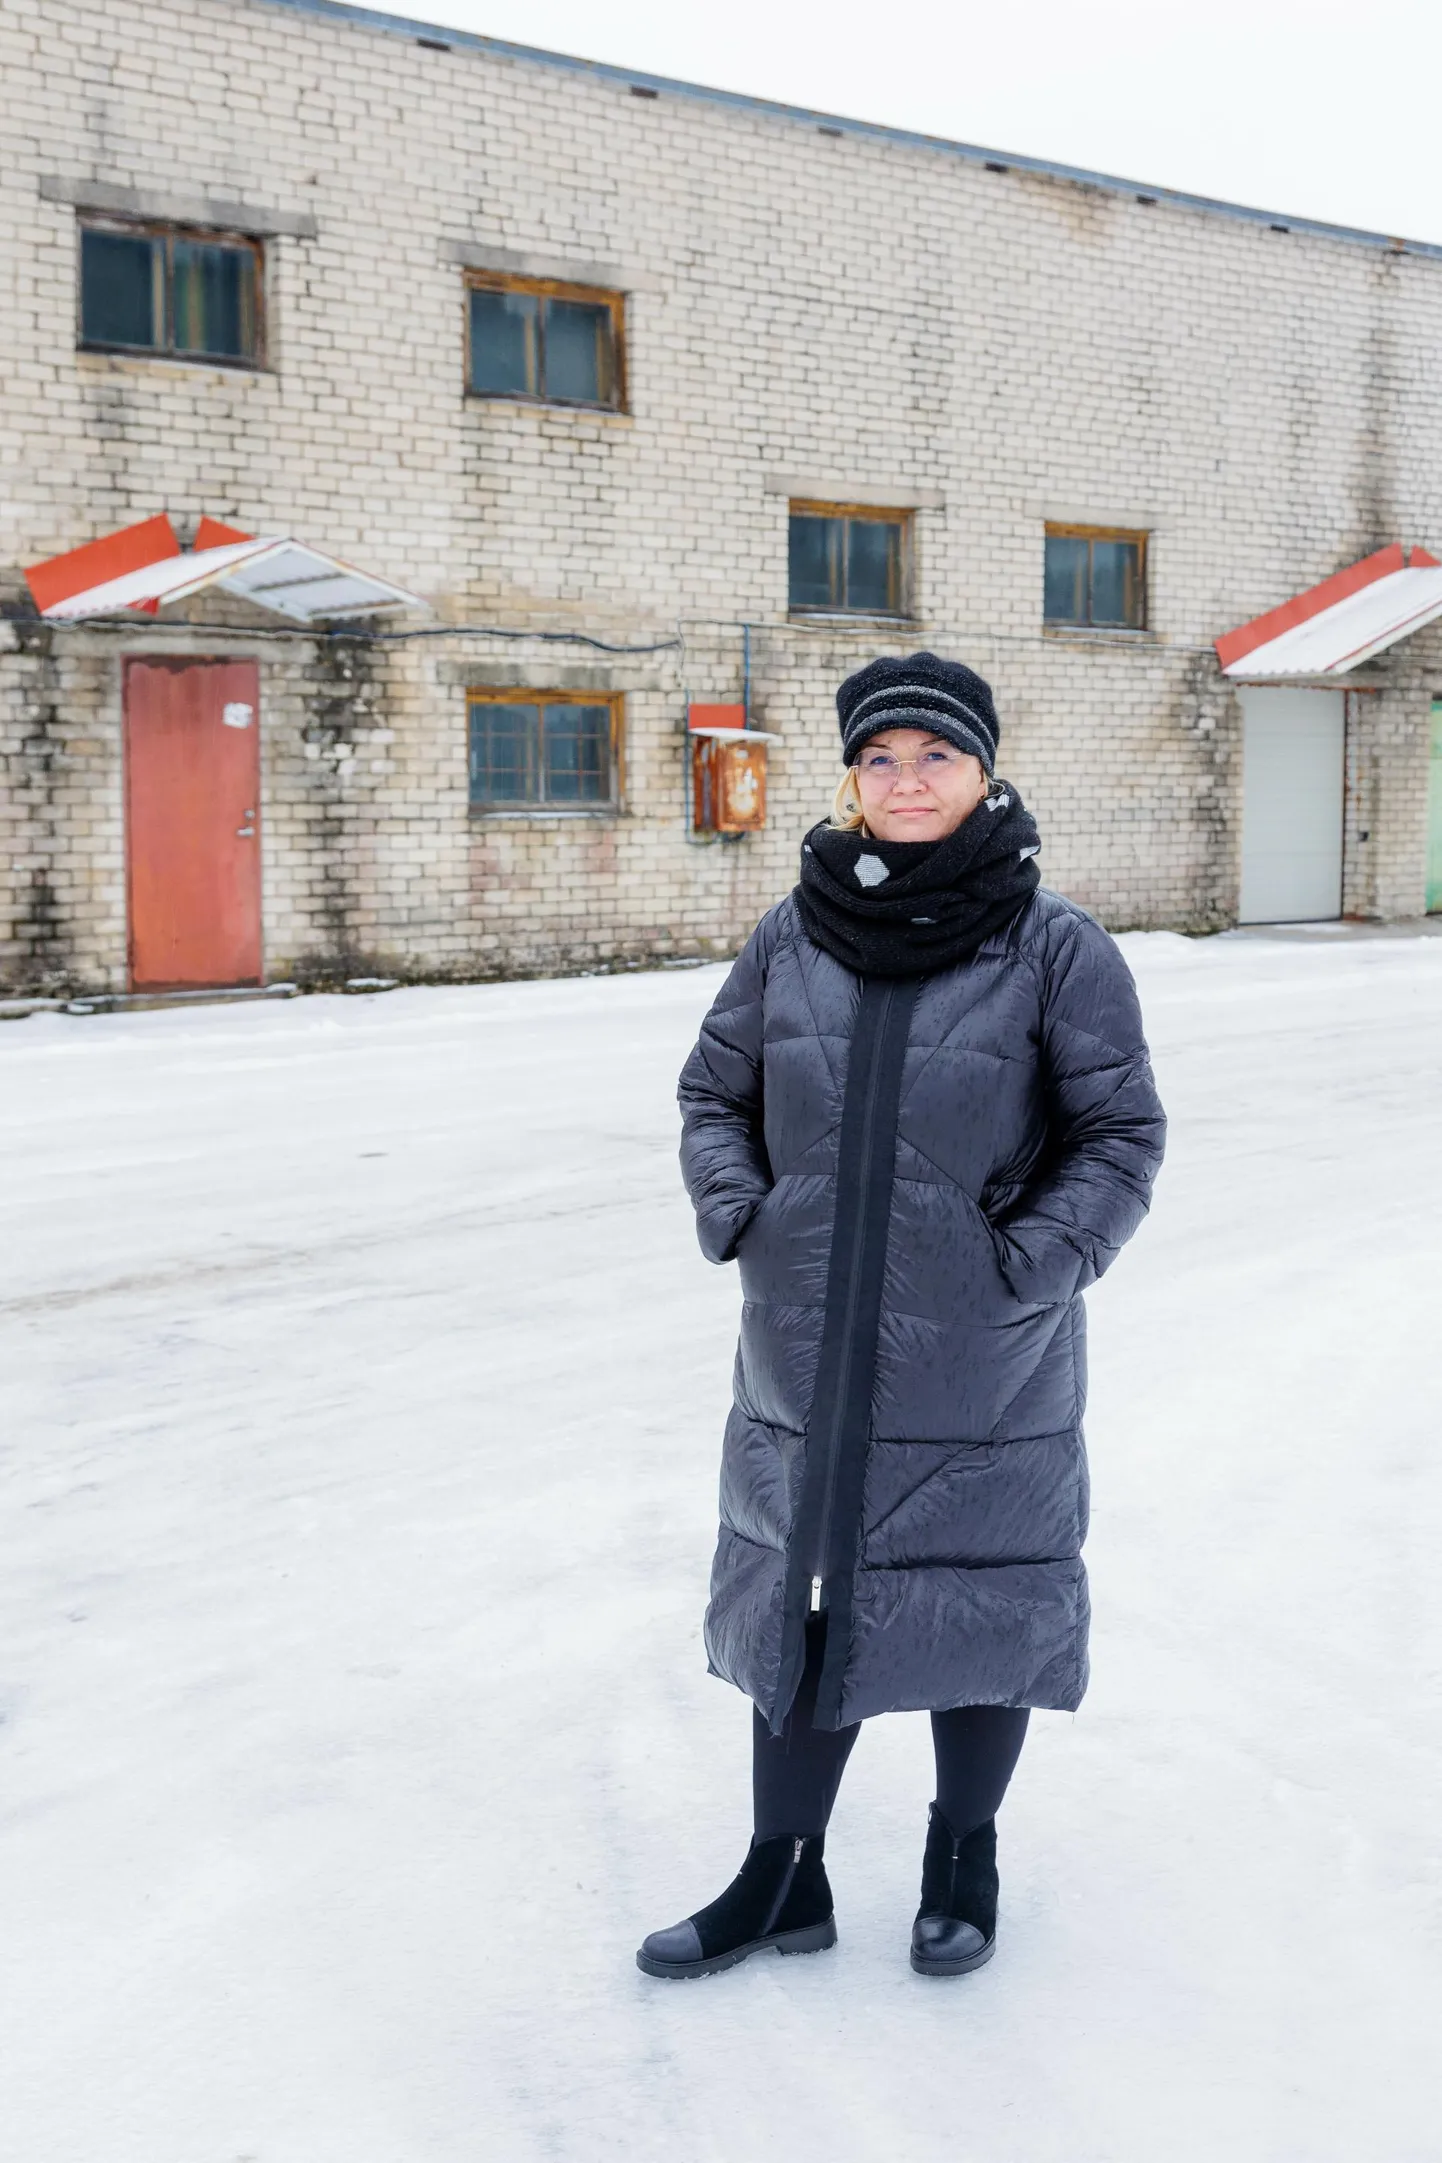 Kagu-Eesti innovatsioonikeskuse juhataja Anita Hoole seisab Põllu tänav 4 laohoone ees, mille asemele on plaanis rajada moodne teenindus- ja tootmishoone.